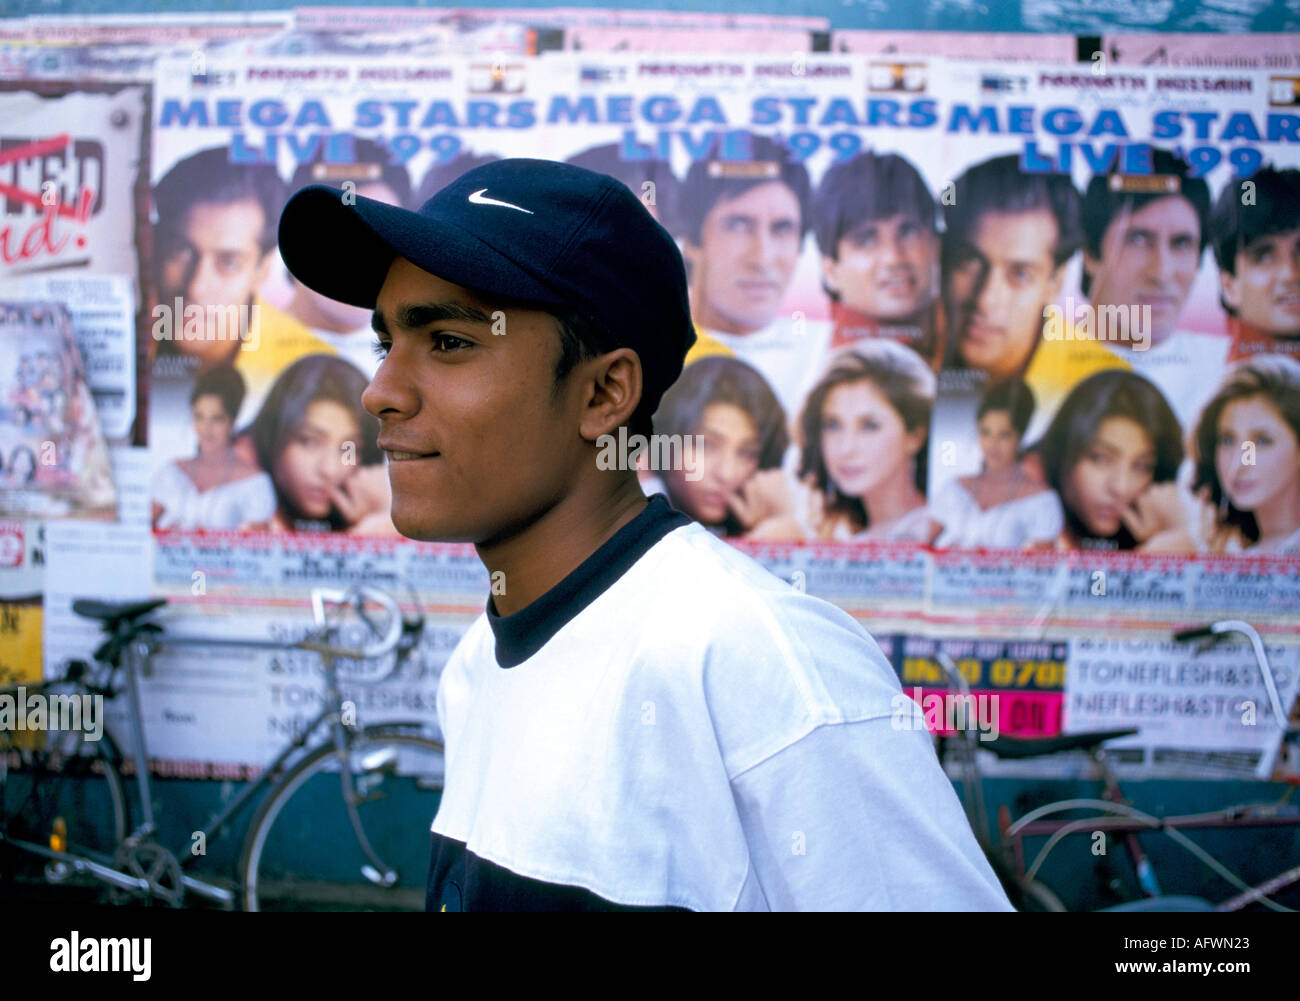 L'adolescent de BAME des années 1990 porte une casquette de baseball Nike  avec des affiches de star de film Bollywood sur le mur derrière. Brick Lane  Londres UK HOMER SYKES Photo Stock -